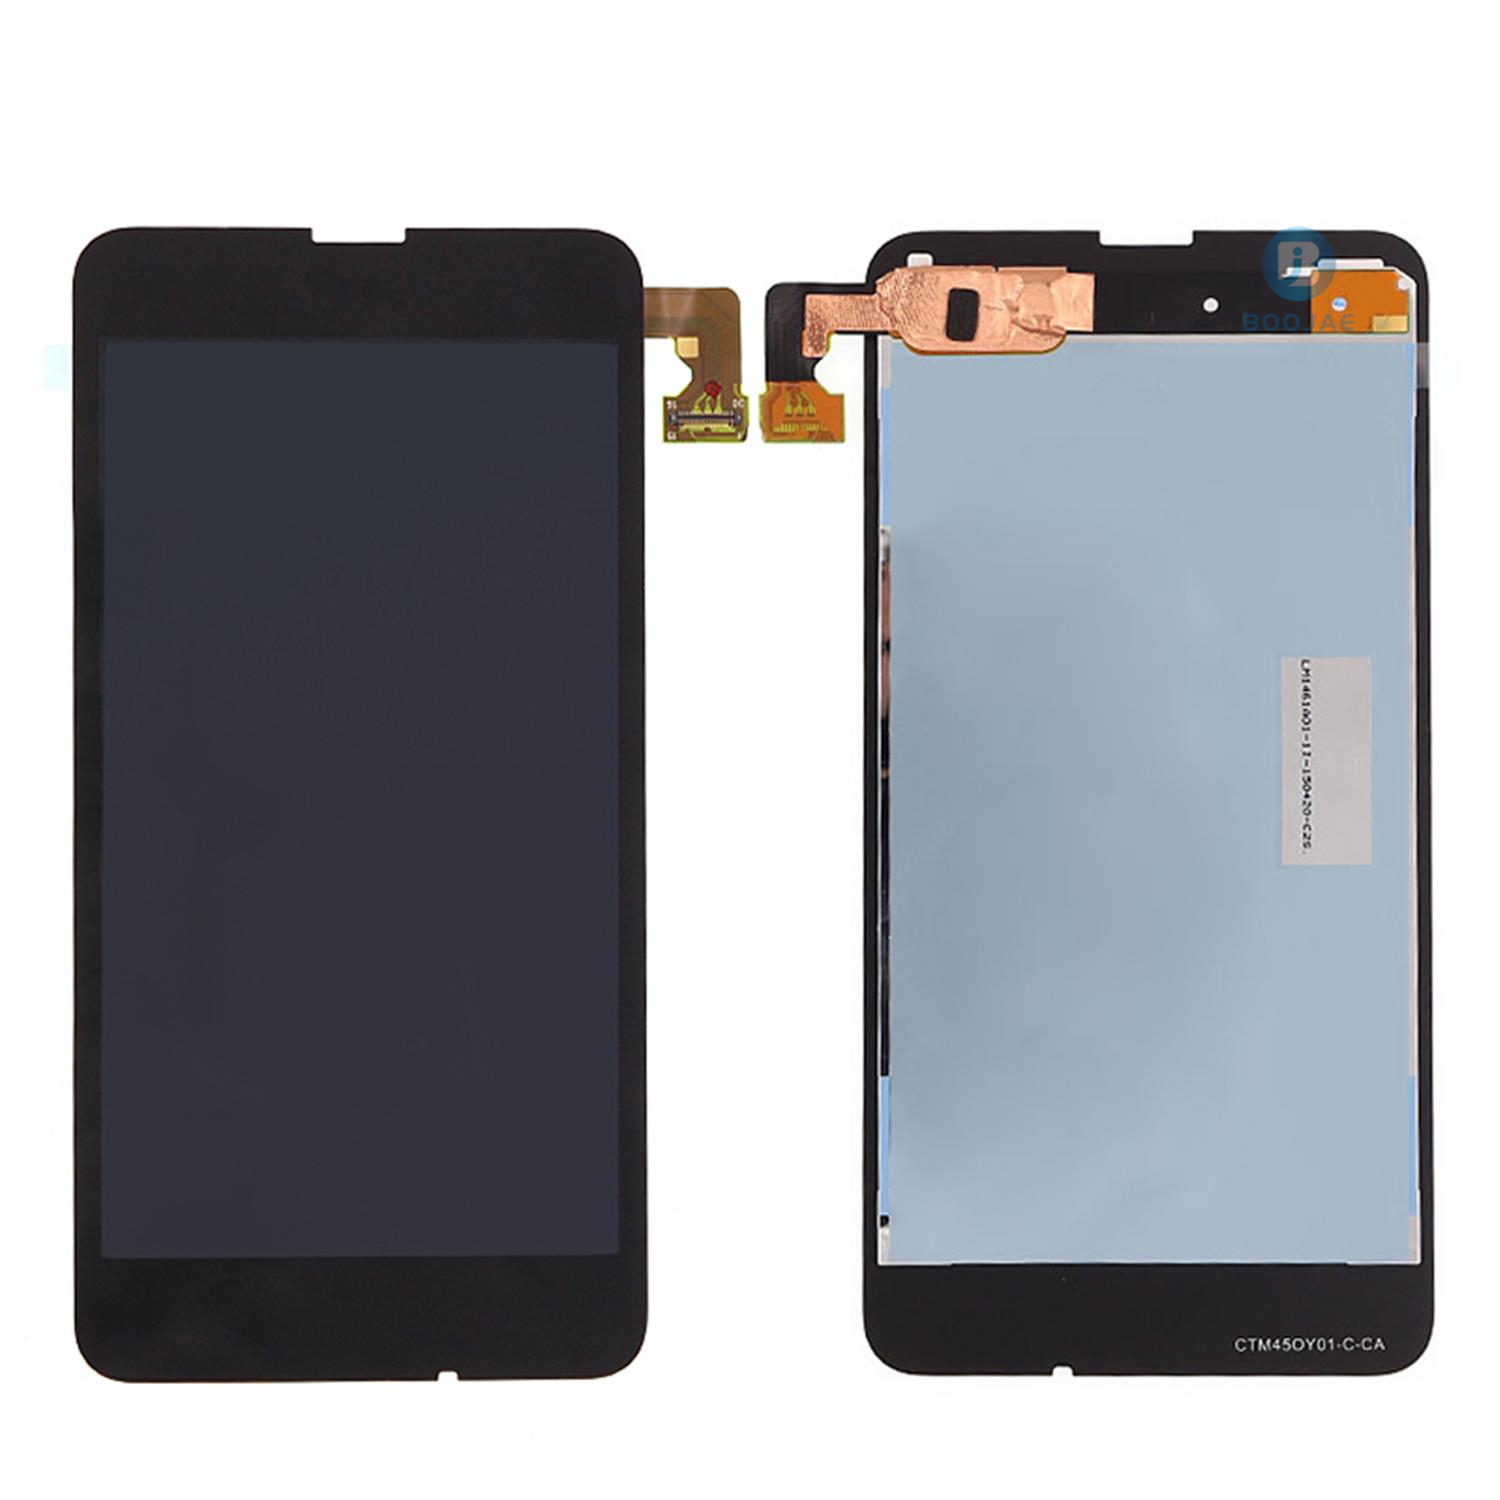 Nokia Lumia 630 LCD Screen Display - BOOJAE